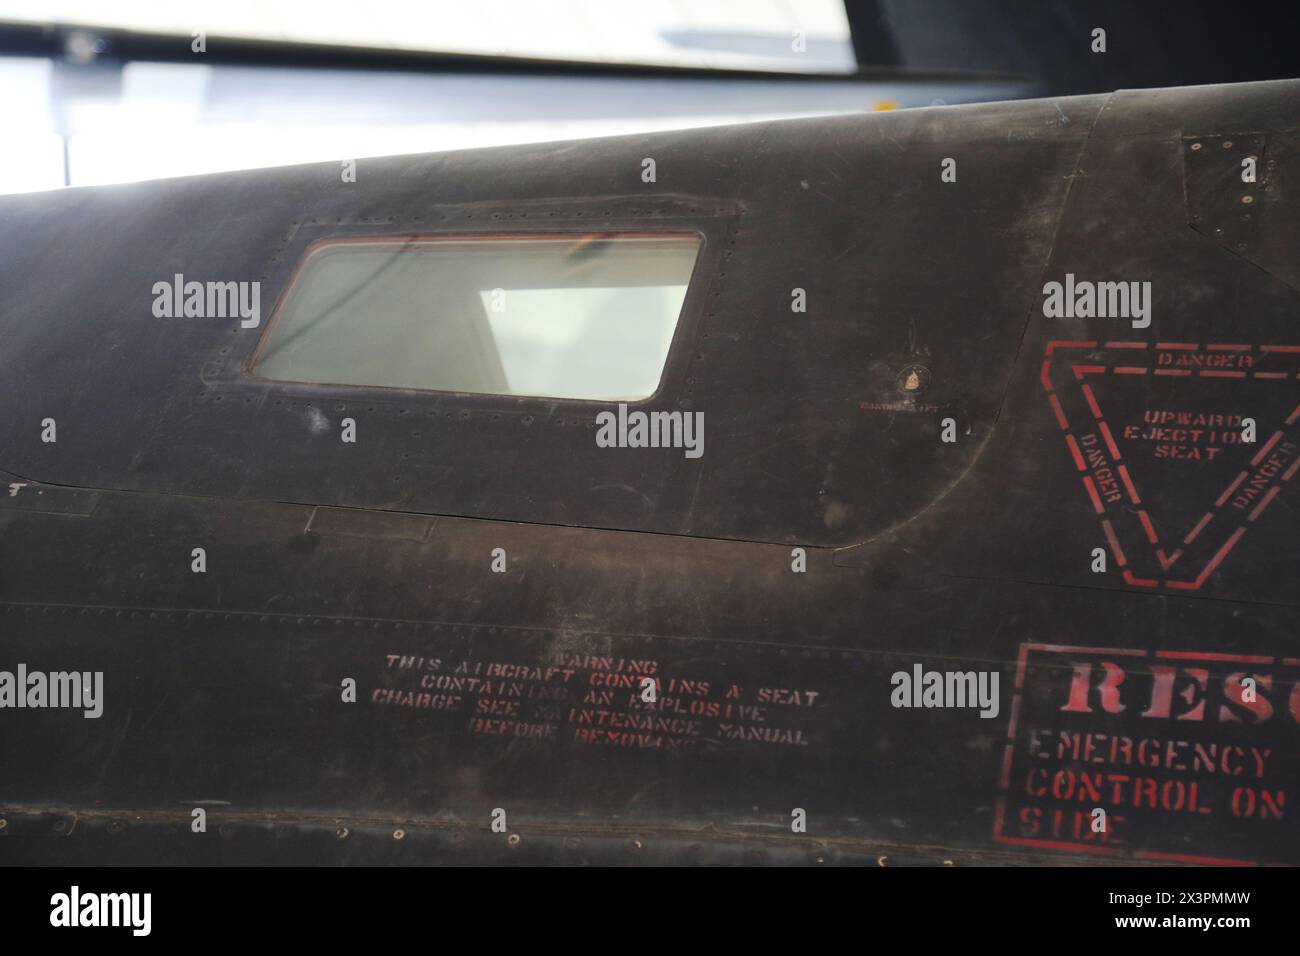 Cockpit-Fenster eines Lockheed SR-71A Blackbird amerikanischen Langstreckenflugzeugs Mach 3+ in großer Höhe. IWM, Duxford, Großbritannien Stockfoto